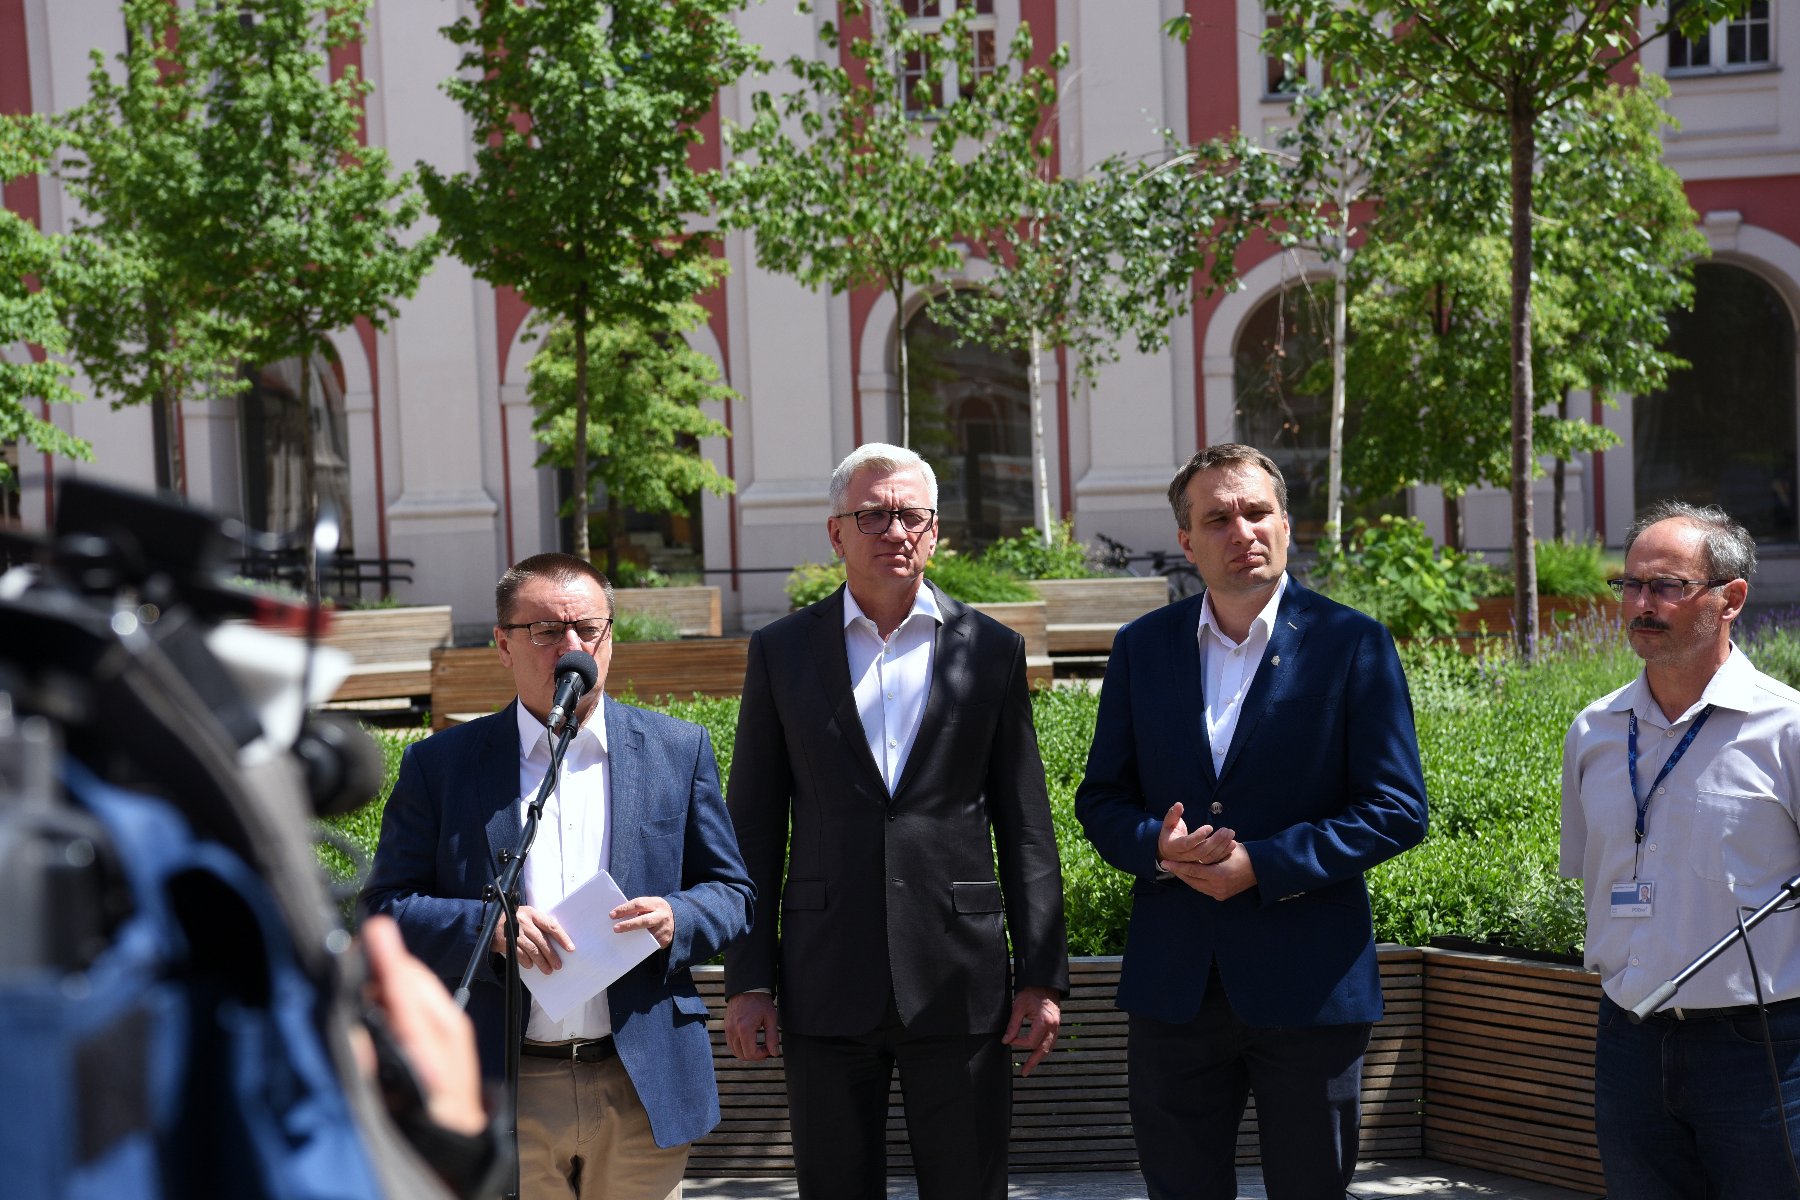 Na zdjęciu dziedziniec urzędu miasta, przy mikrofonach stoi czterech mężczyzn, w tym Jacek Jaśkowiak i Mariusz Wiśniewski, w tle drzewa - grafika artykułu